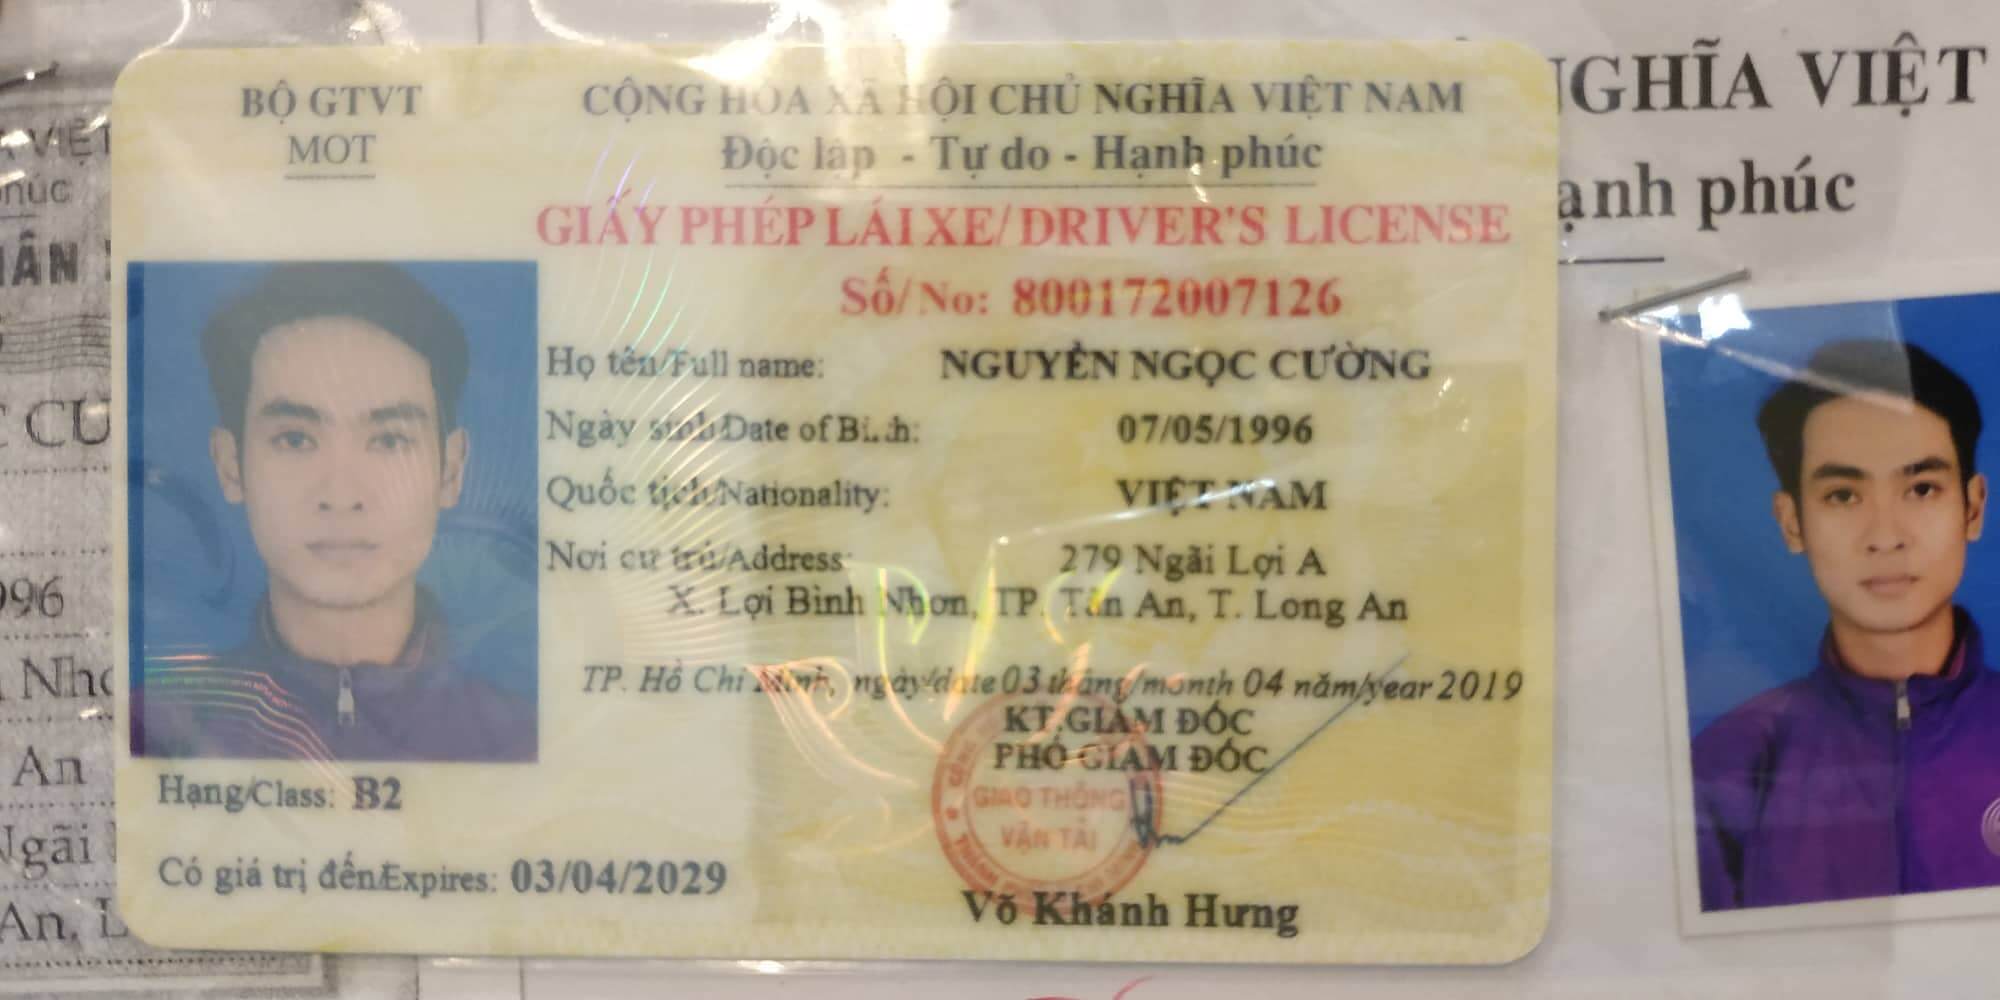 Các quy định về việc đổi giấy phép lái xe ở Việt Nam